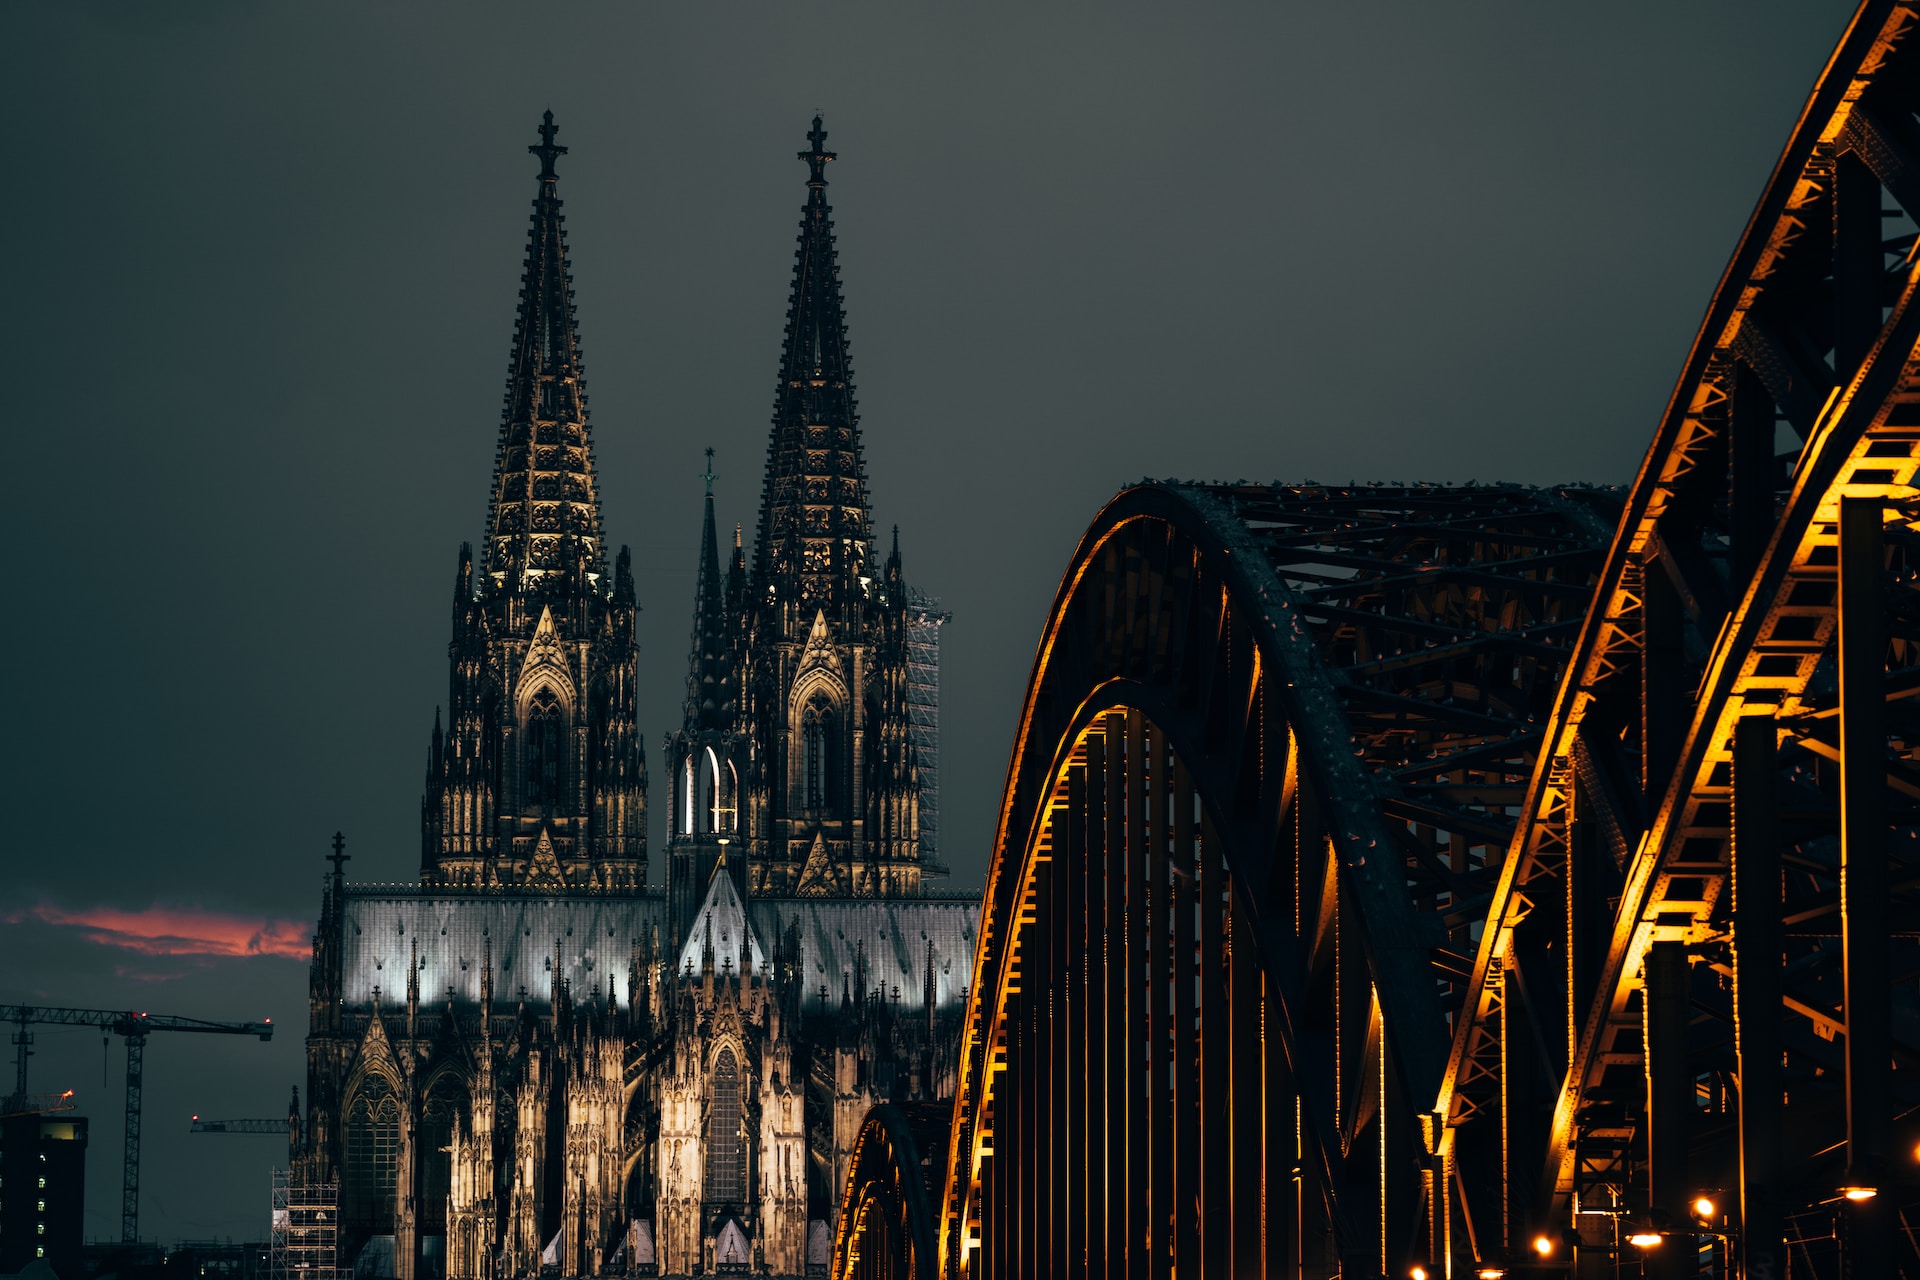 Der Kölner Dom ist eine der beeindruckendsten gotischen Kathedralen der Welt und ein Symbol der Stadt